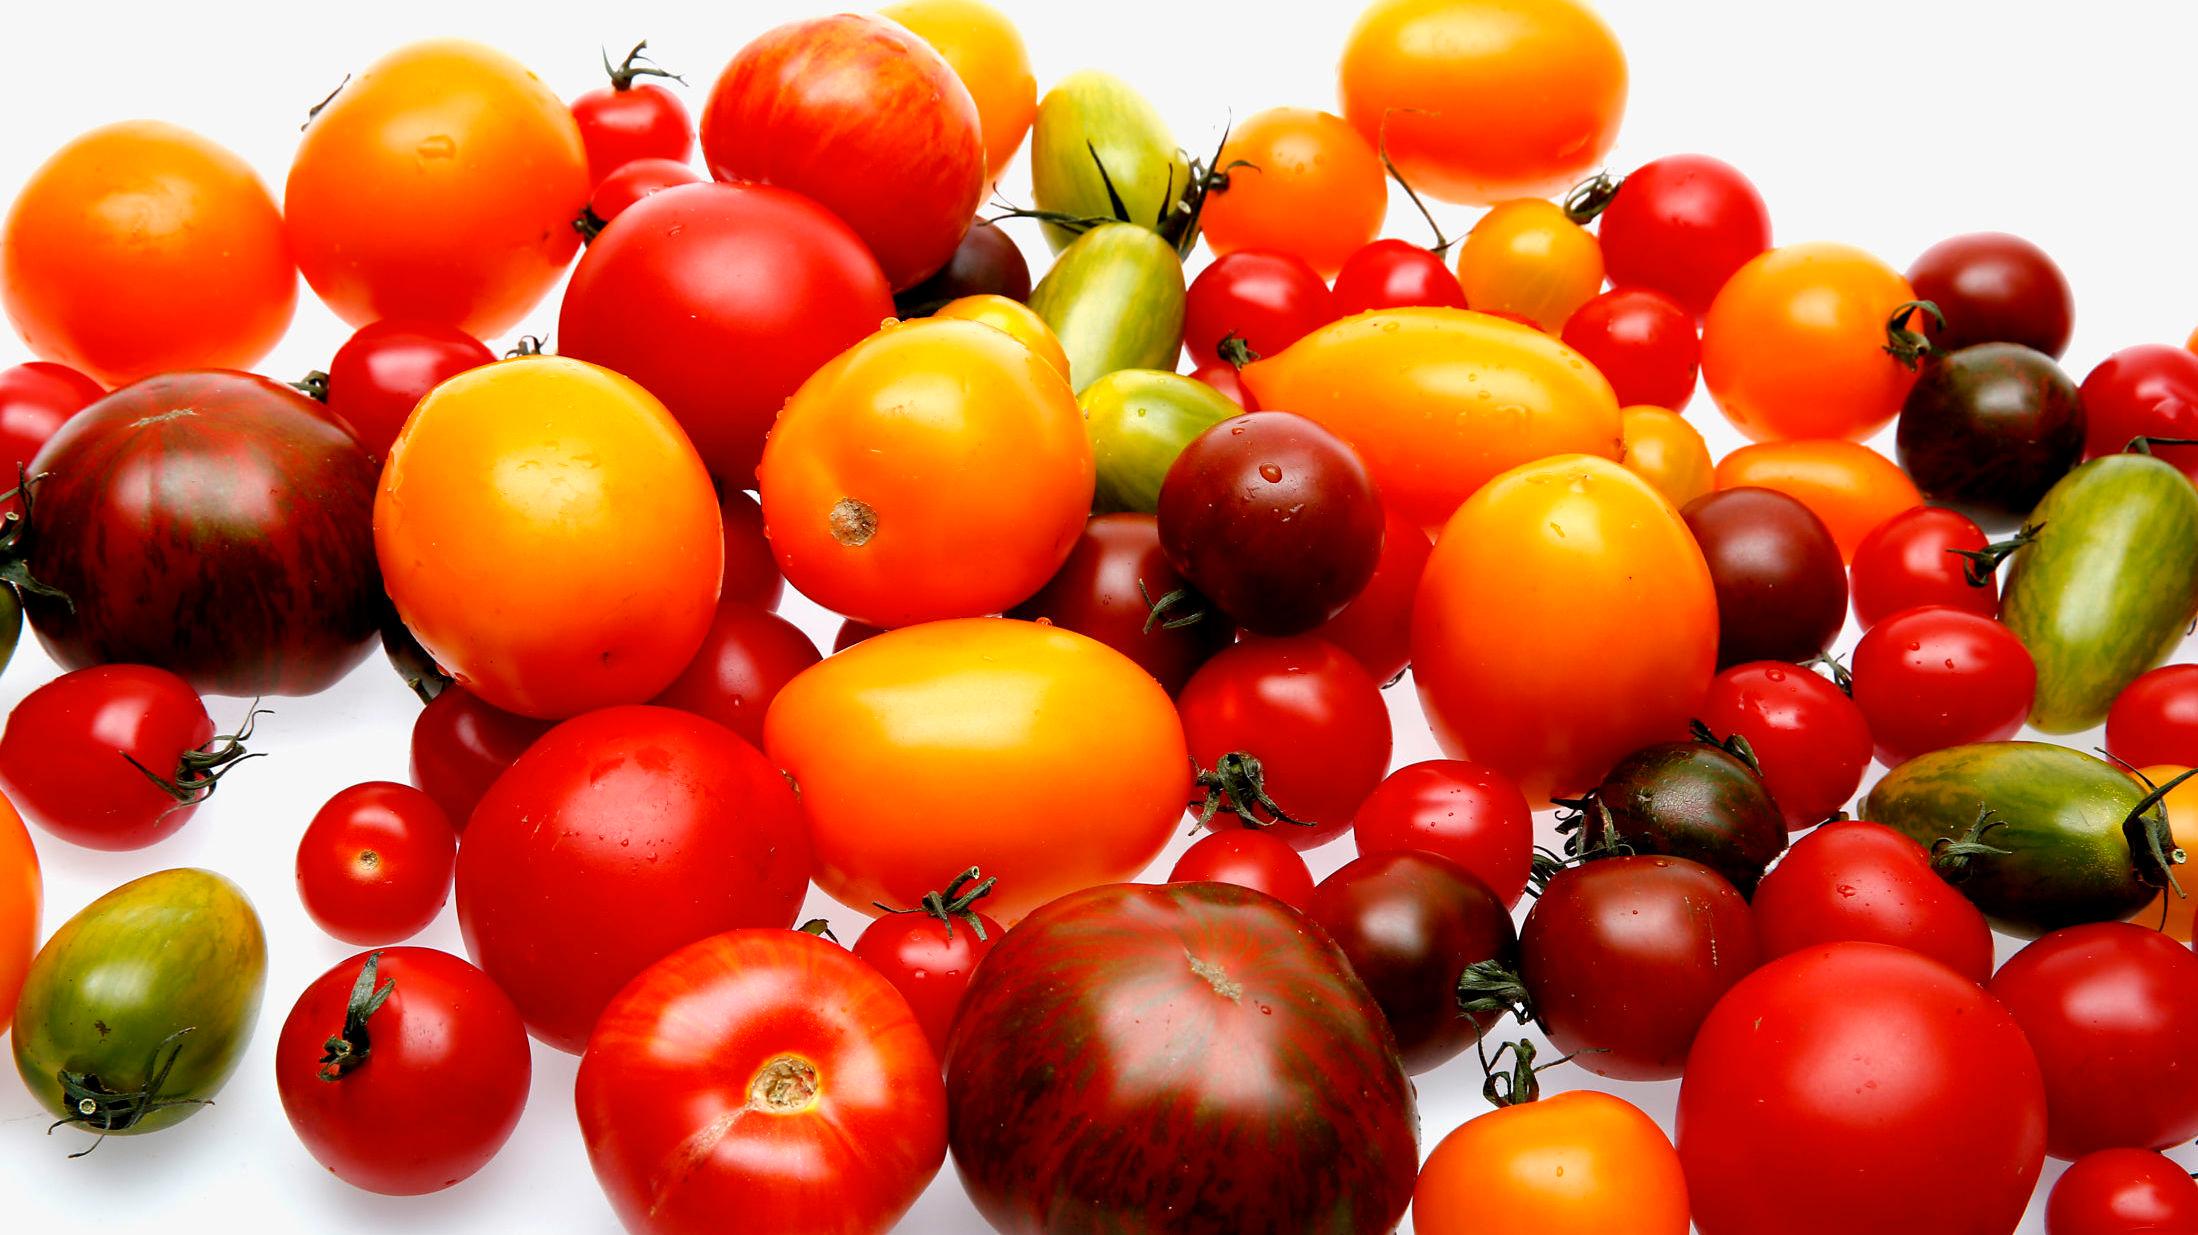 TA EN TOMAT: Tomaten er egentlig en frukt - og kan godt spises som det også. Foto: Trond Solberg.